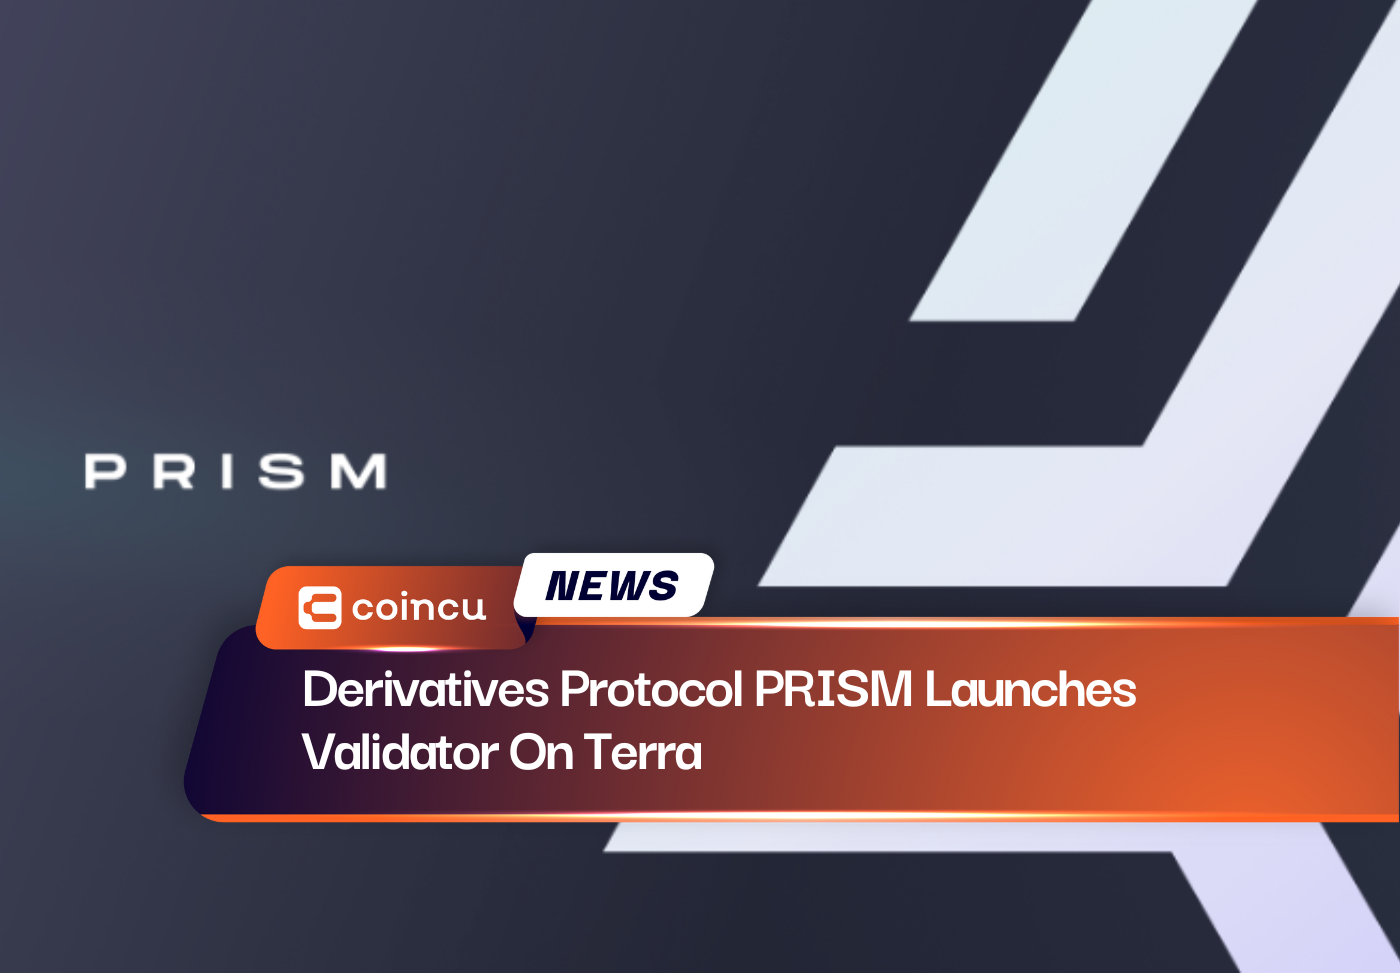 डेरिवेटिव प्रोटोकॉल PRISM ने टेरा पर वैलिडेटर लॉन्च किया